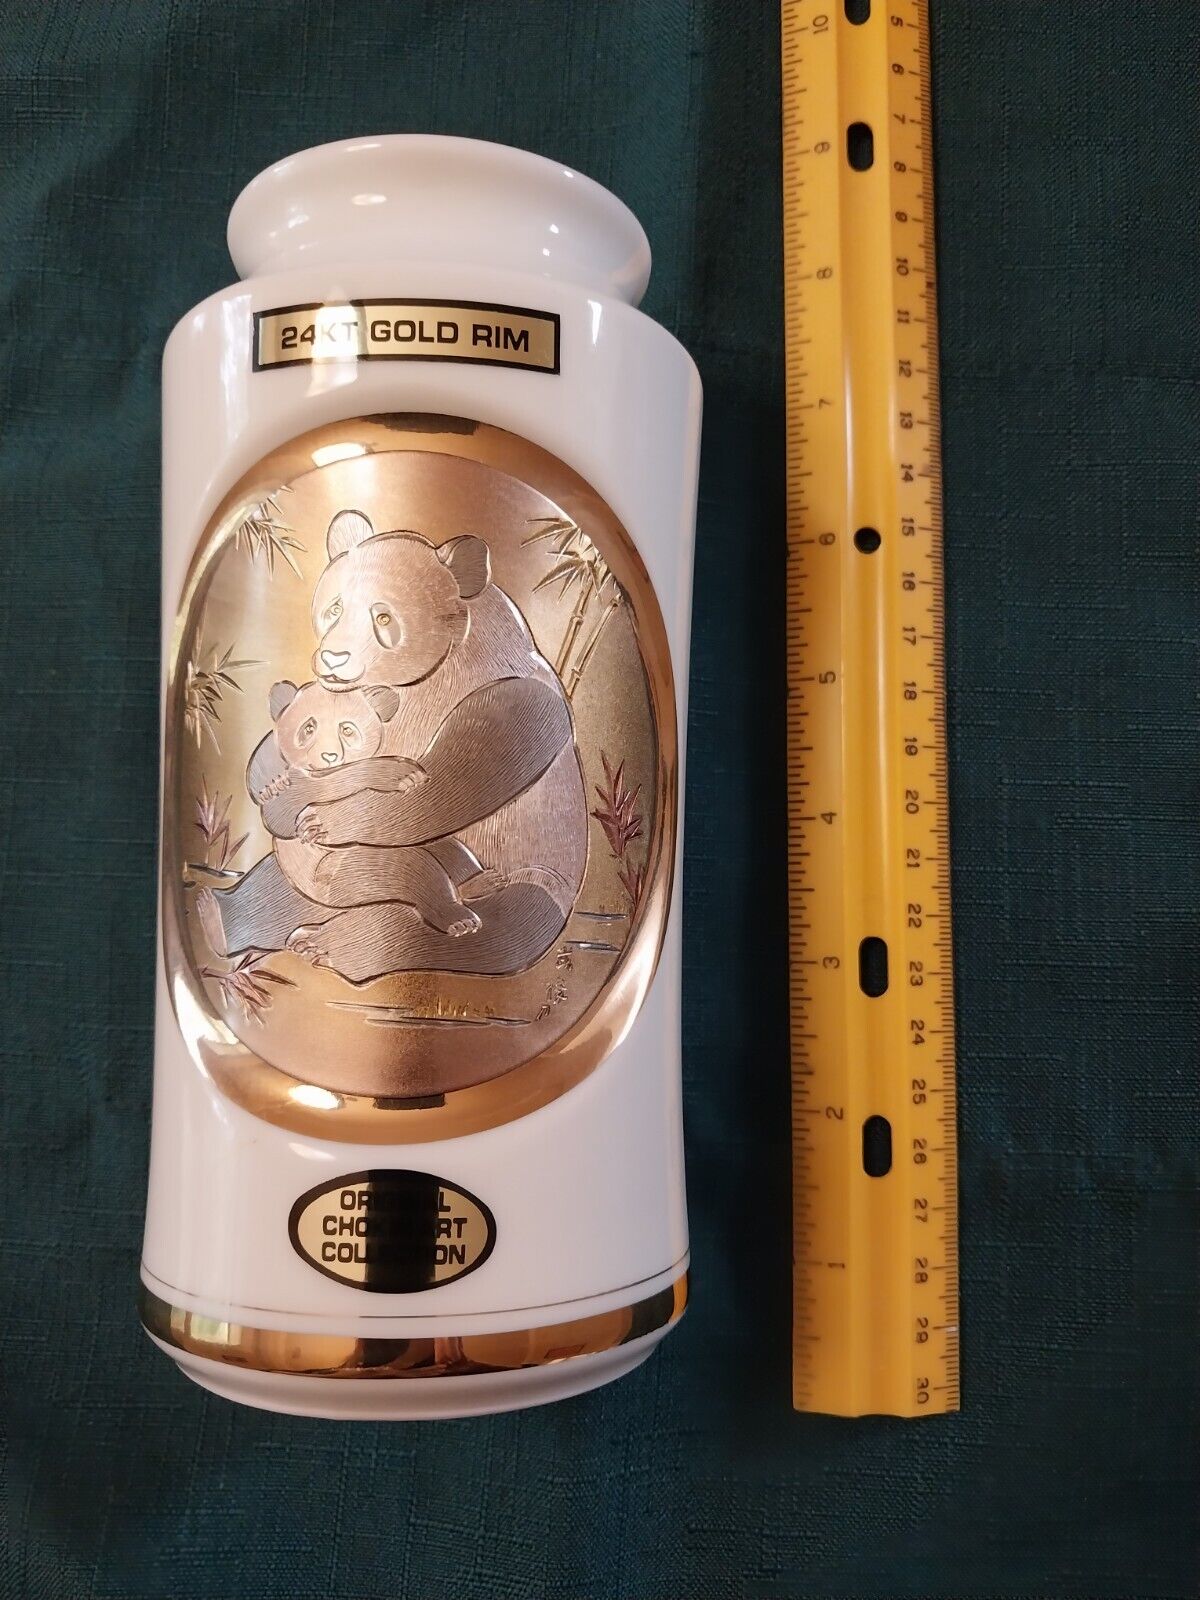 Original Chokin Art Collection 24kt Gold Rim Panda 6-1/2